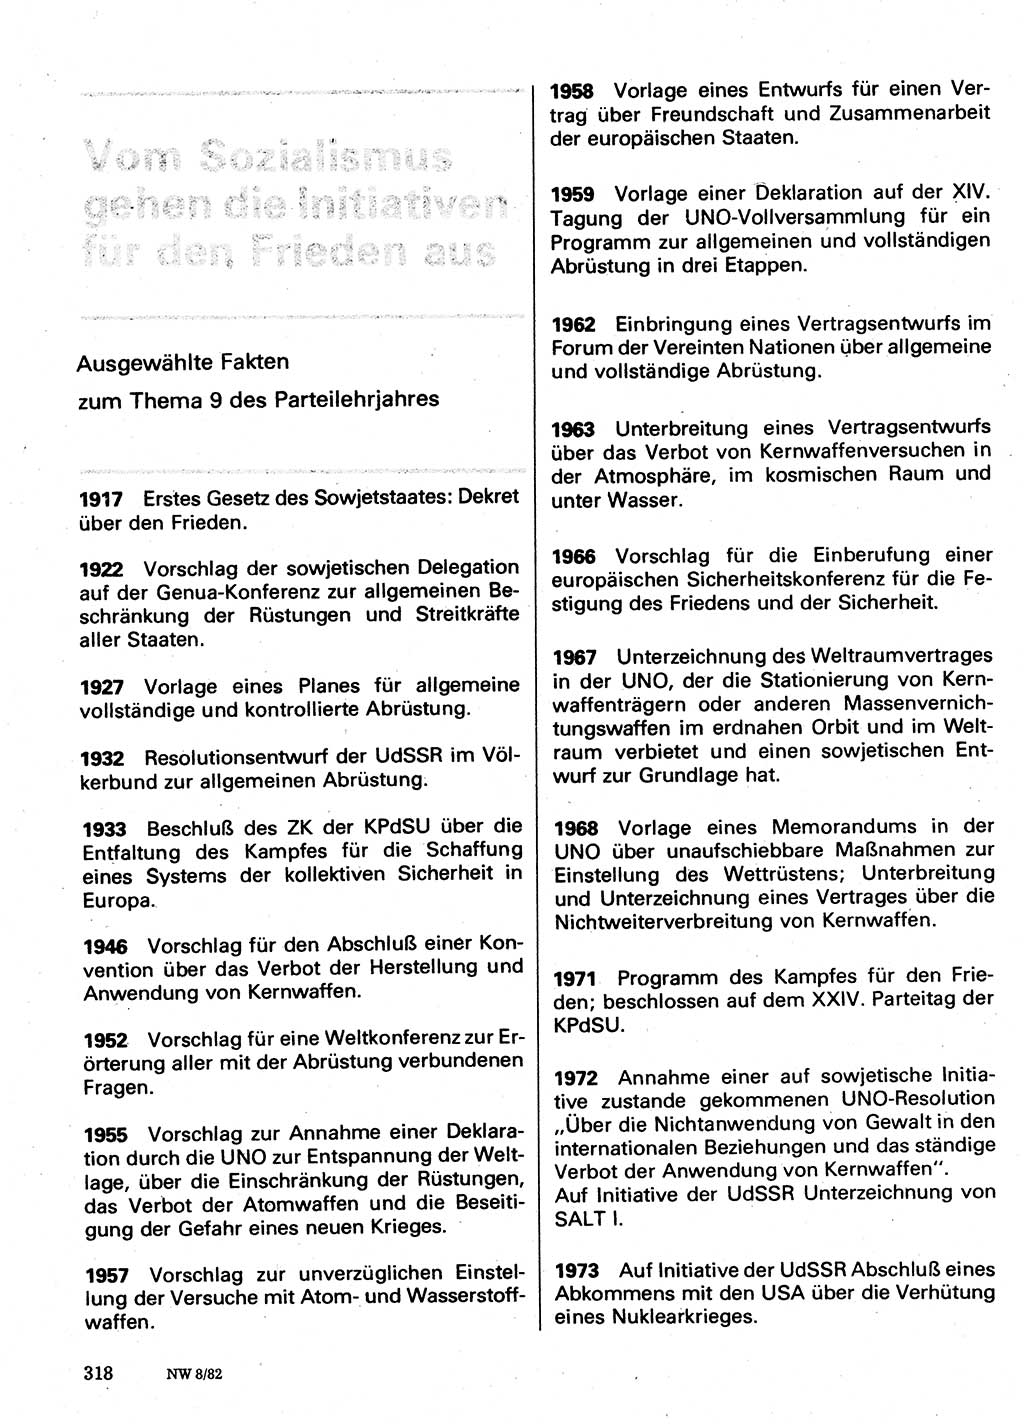 Neuer Weg (NW), Organ des Zentralkomitees (ZK) der SED (Sozialistische Einheitspartei Deutschlands) für Fragen des Parteilebens, 37. Jahrgang [Deutsche Demokratische Republik (DDR)] 1982, Seite 318 (NW ZK SED DDR 1982, S. 318)